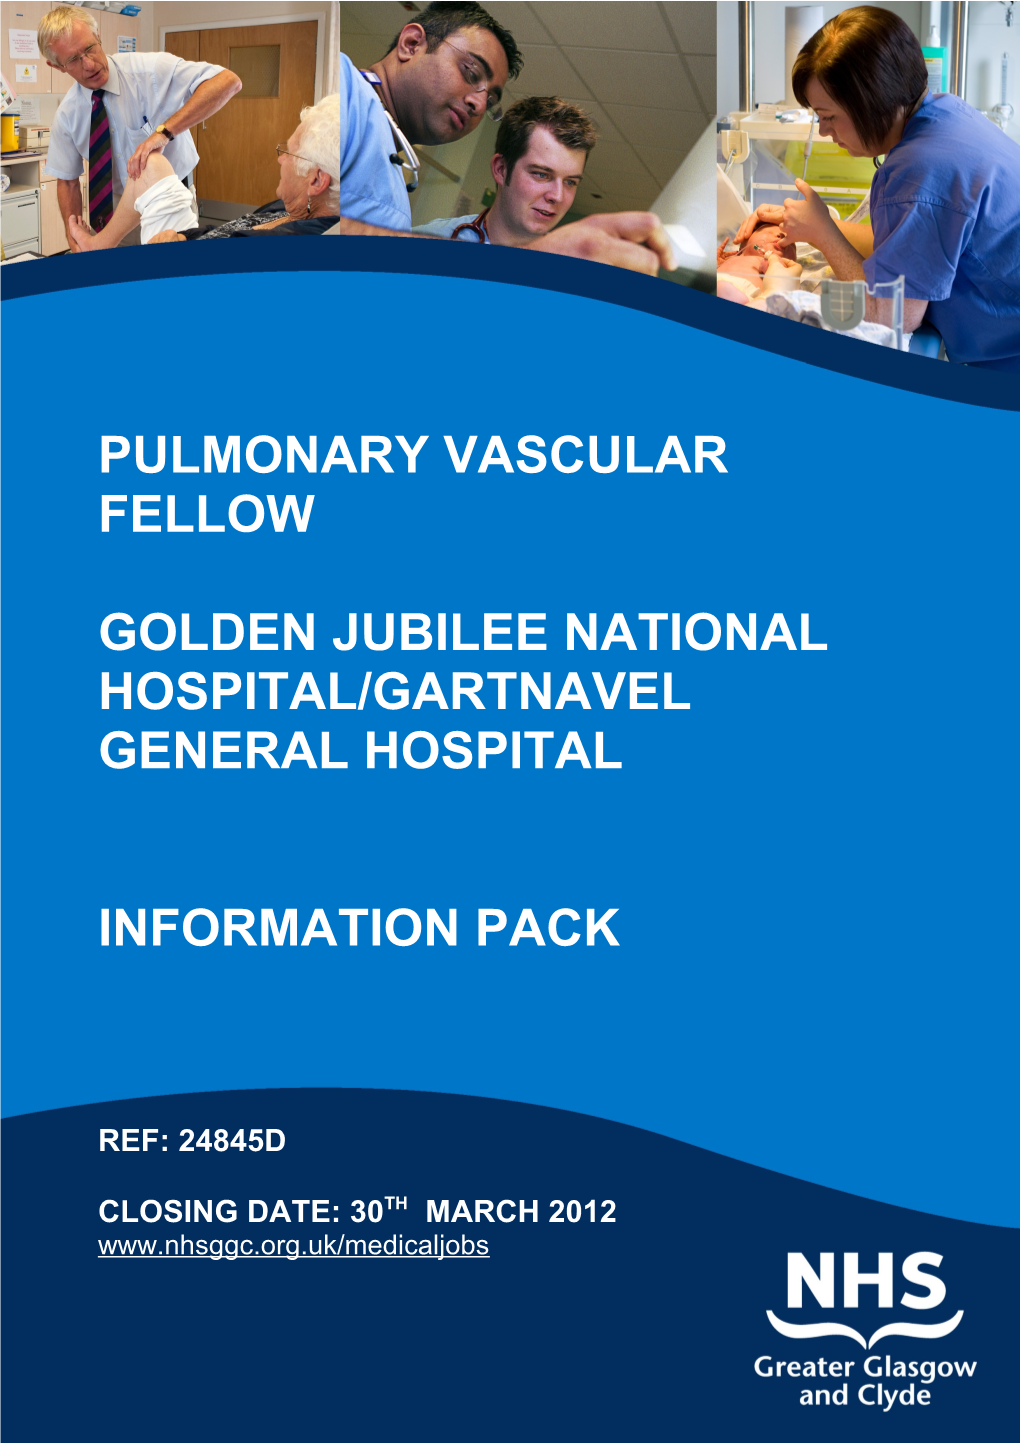 Golden Jubilee National Hospital/Gartnavel General Hospital